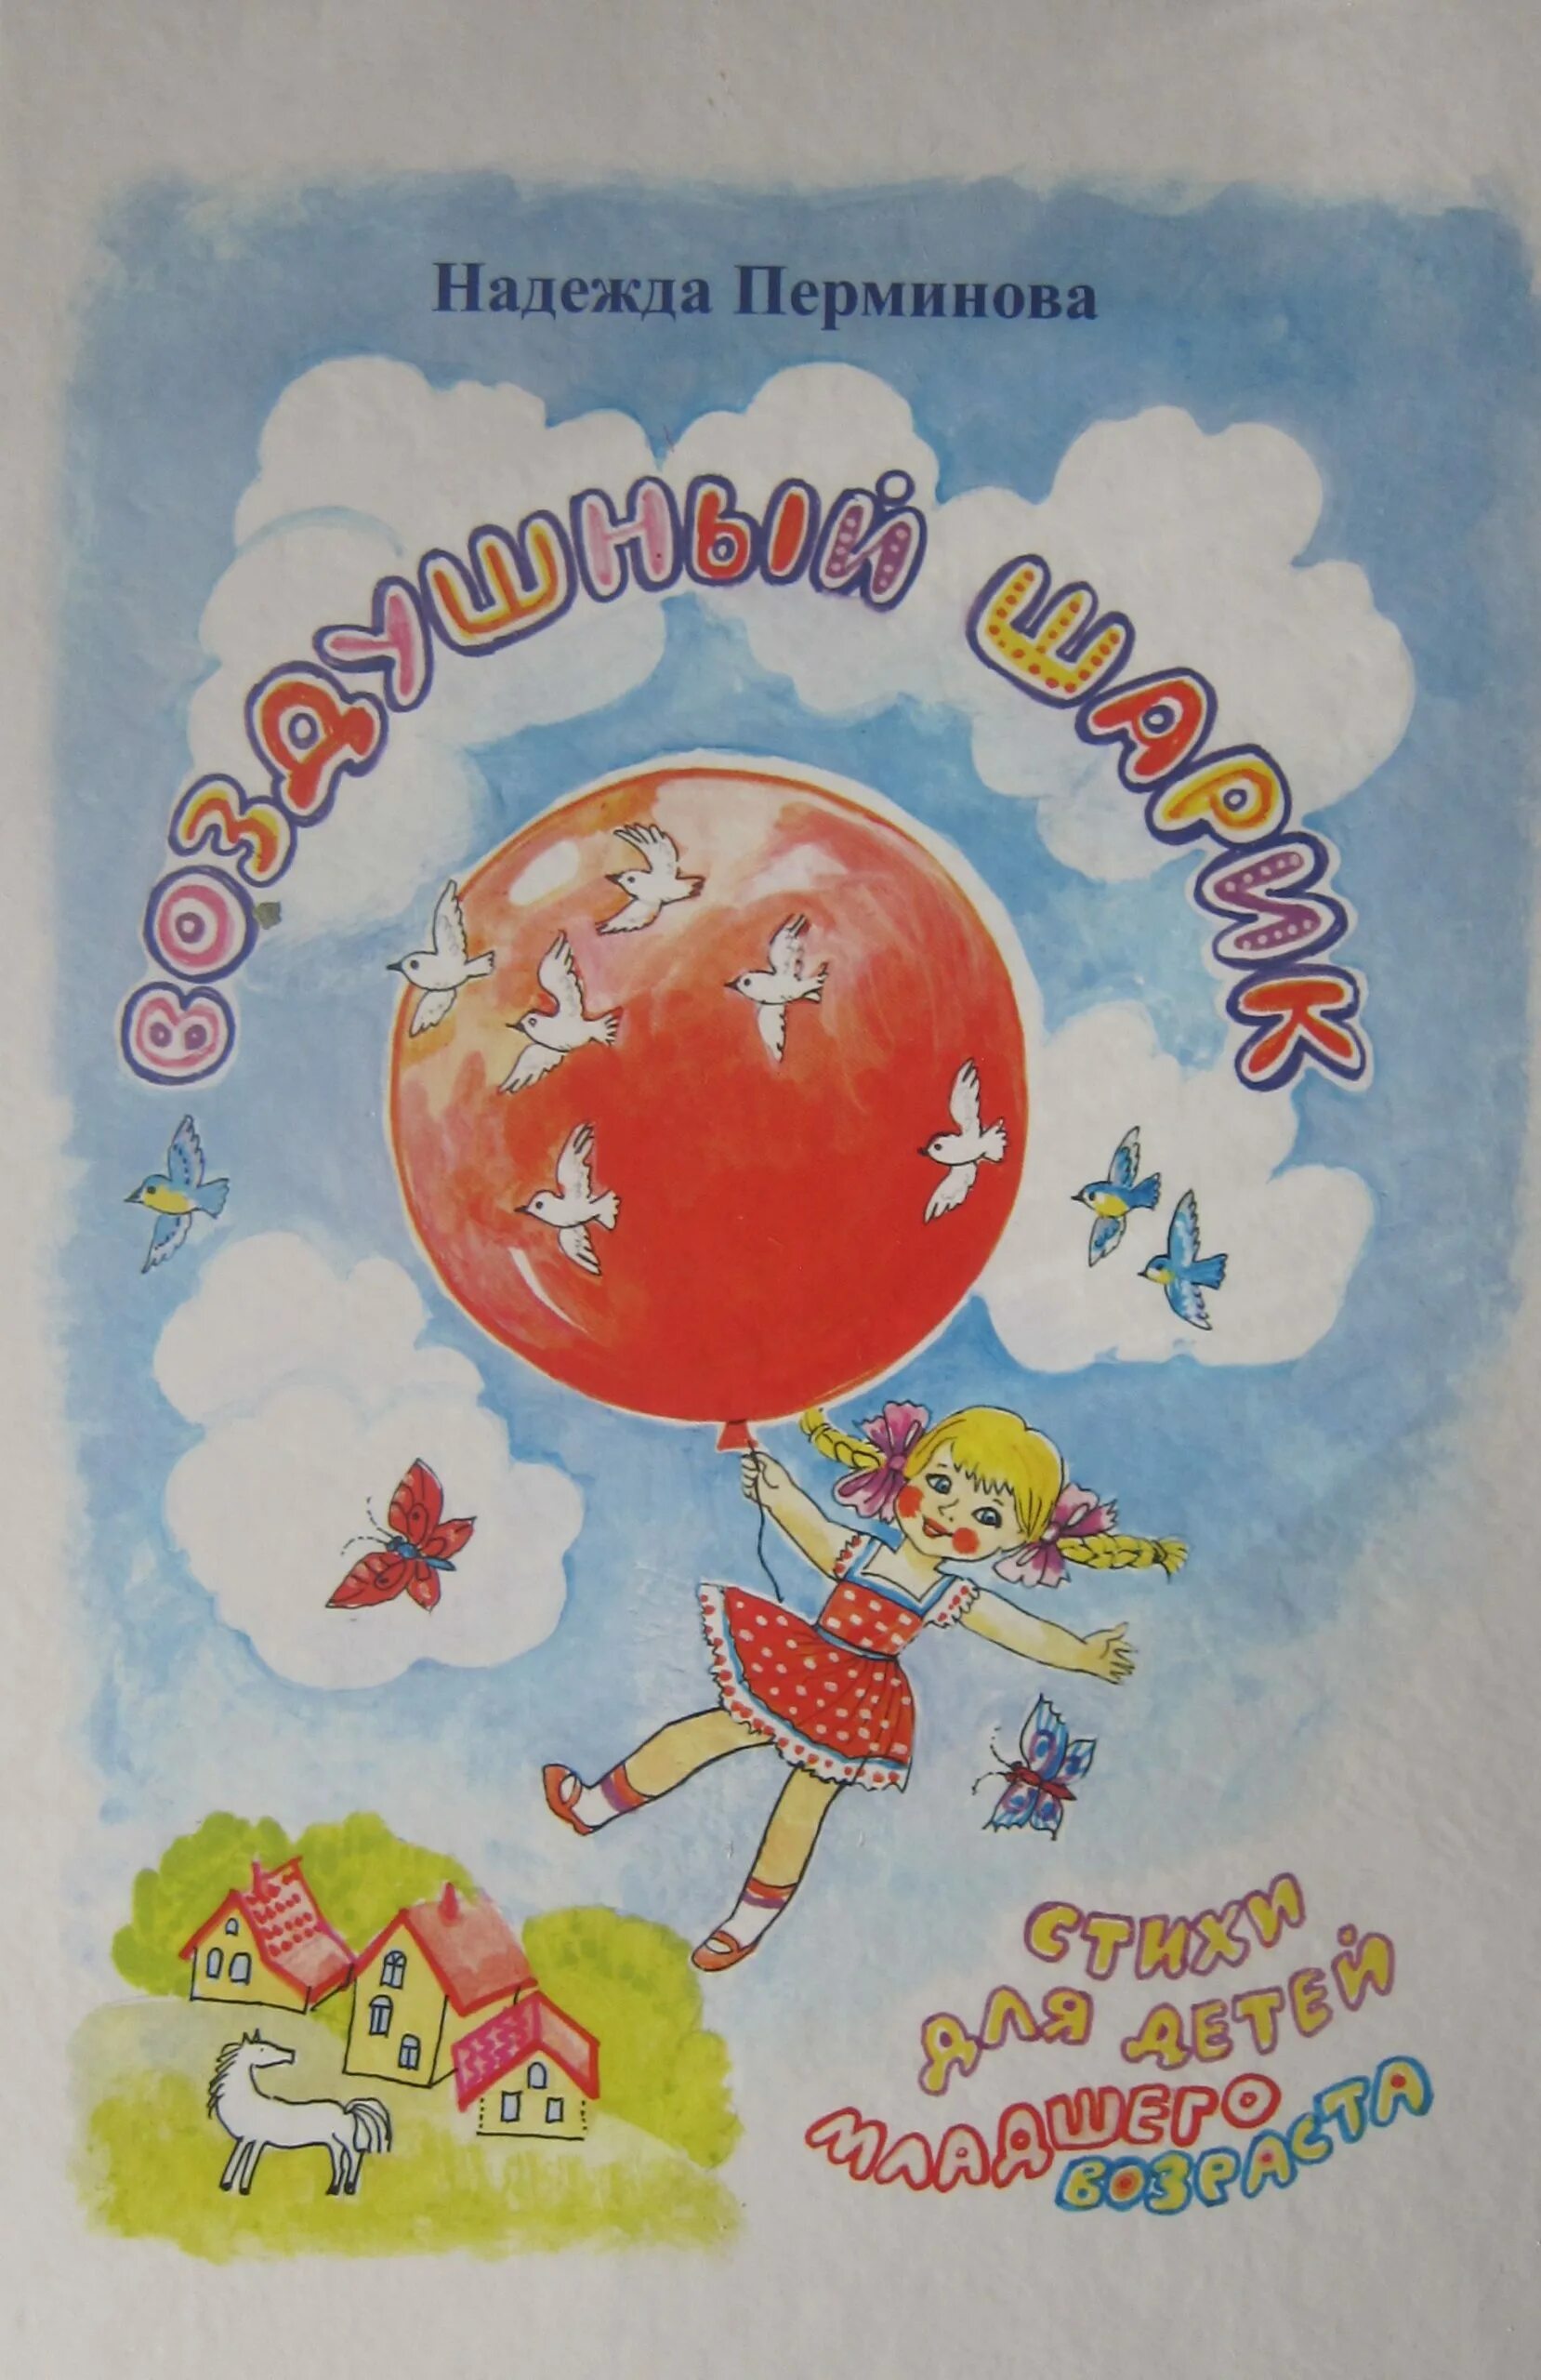 Воздушные шары читать. Перминова воздушный шарик книга. Книги о воздушных шарах. Путешествие на воздушных шарах книга. Книги про воздушные шары.